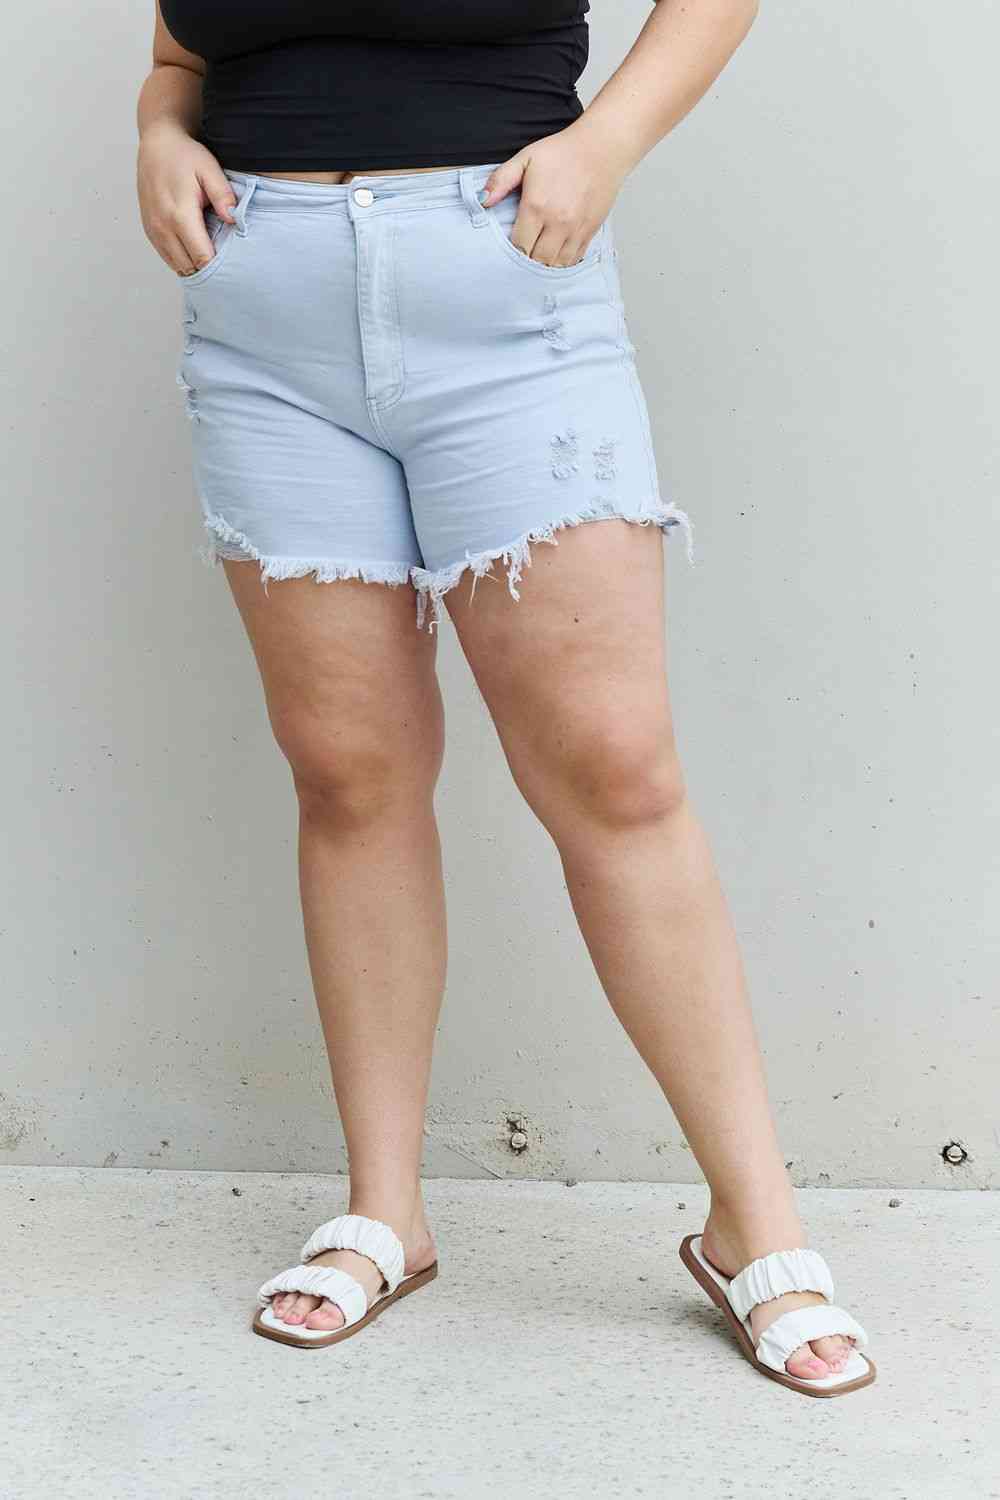 RISEN Katie Pantalones cortos desgastados de cintura alta de tamaño completo en azul hielo